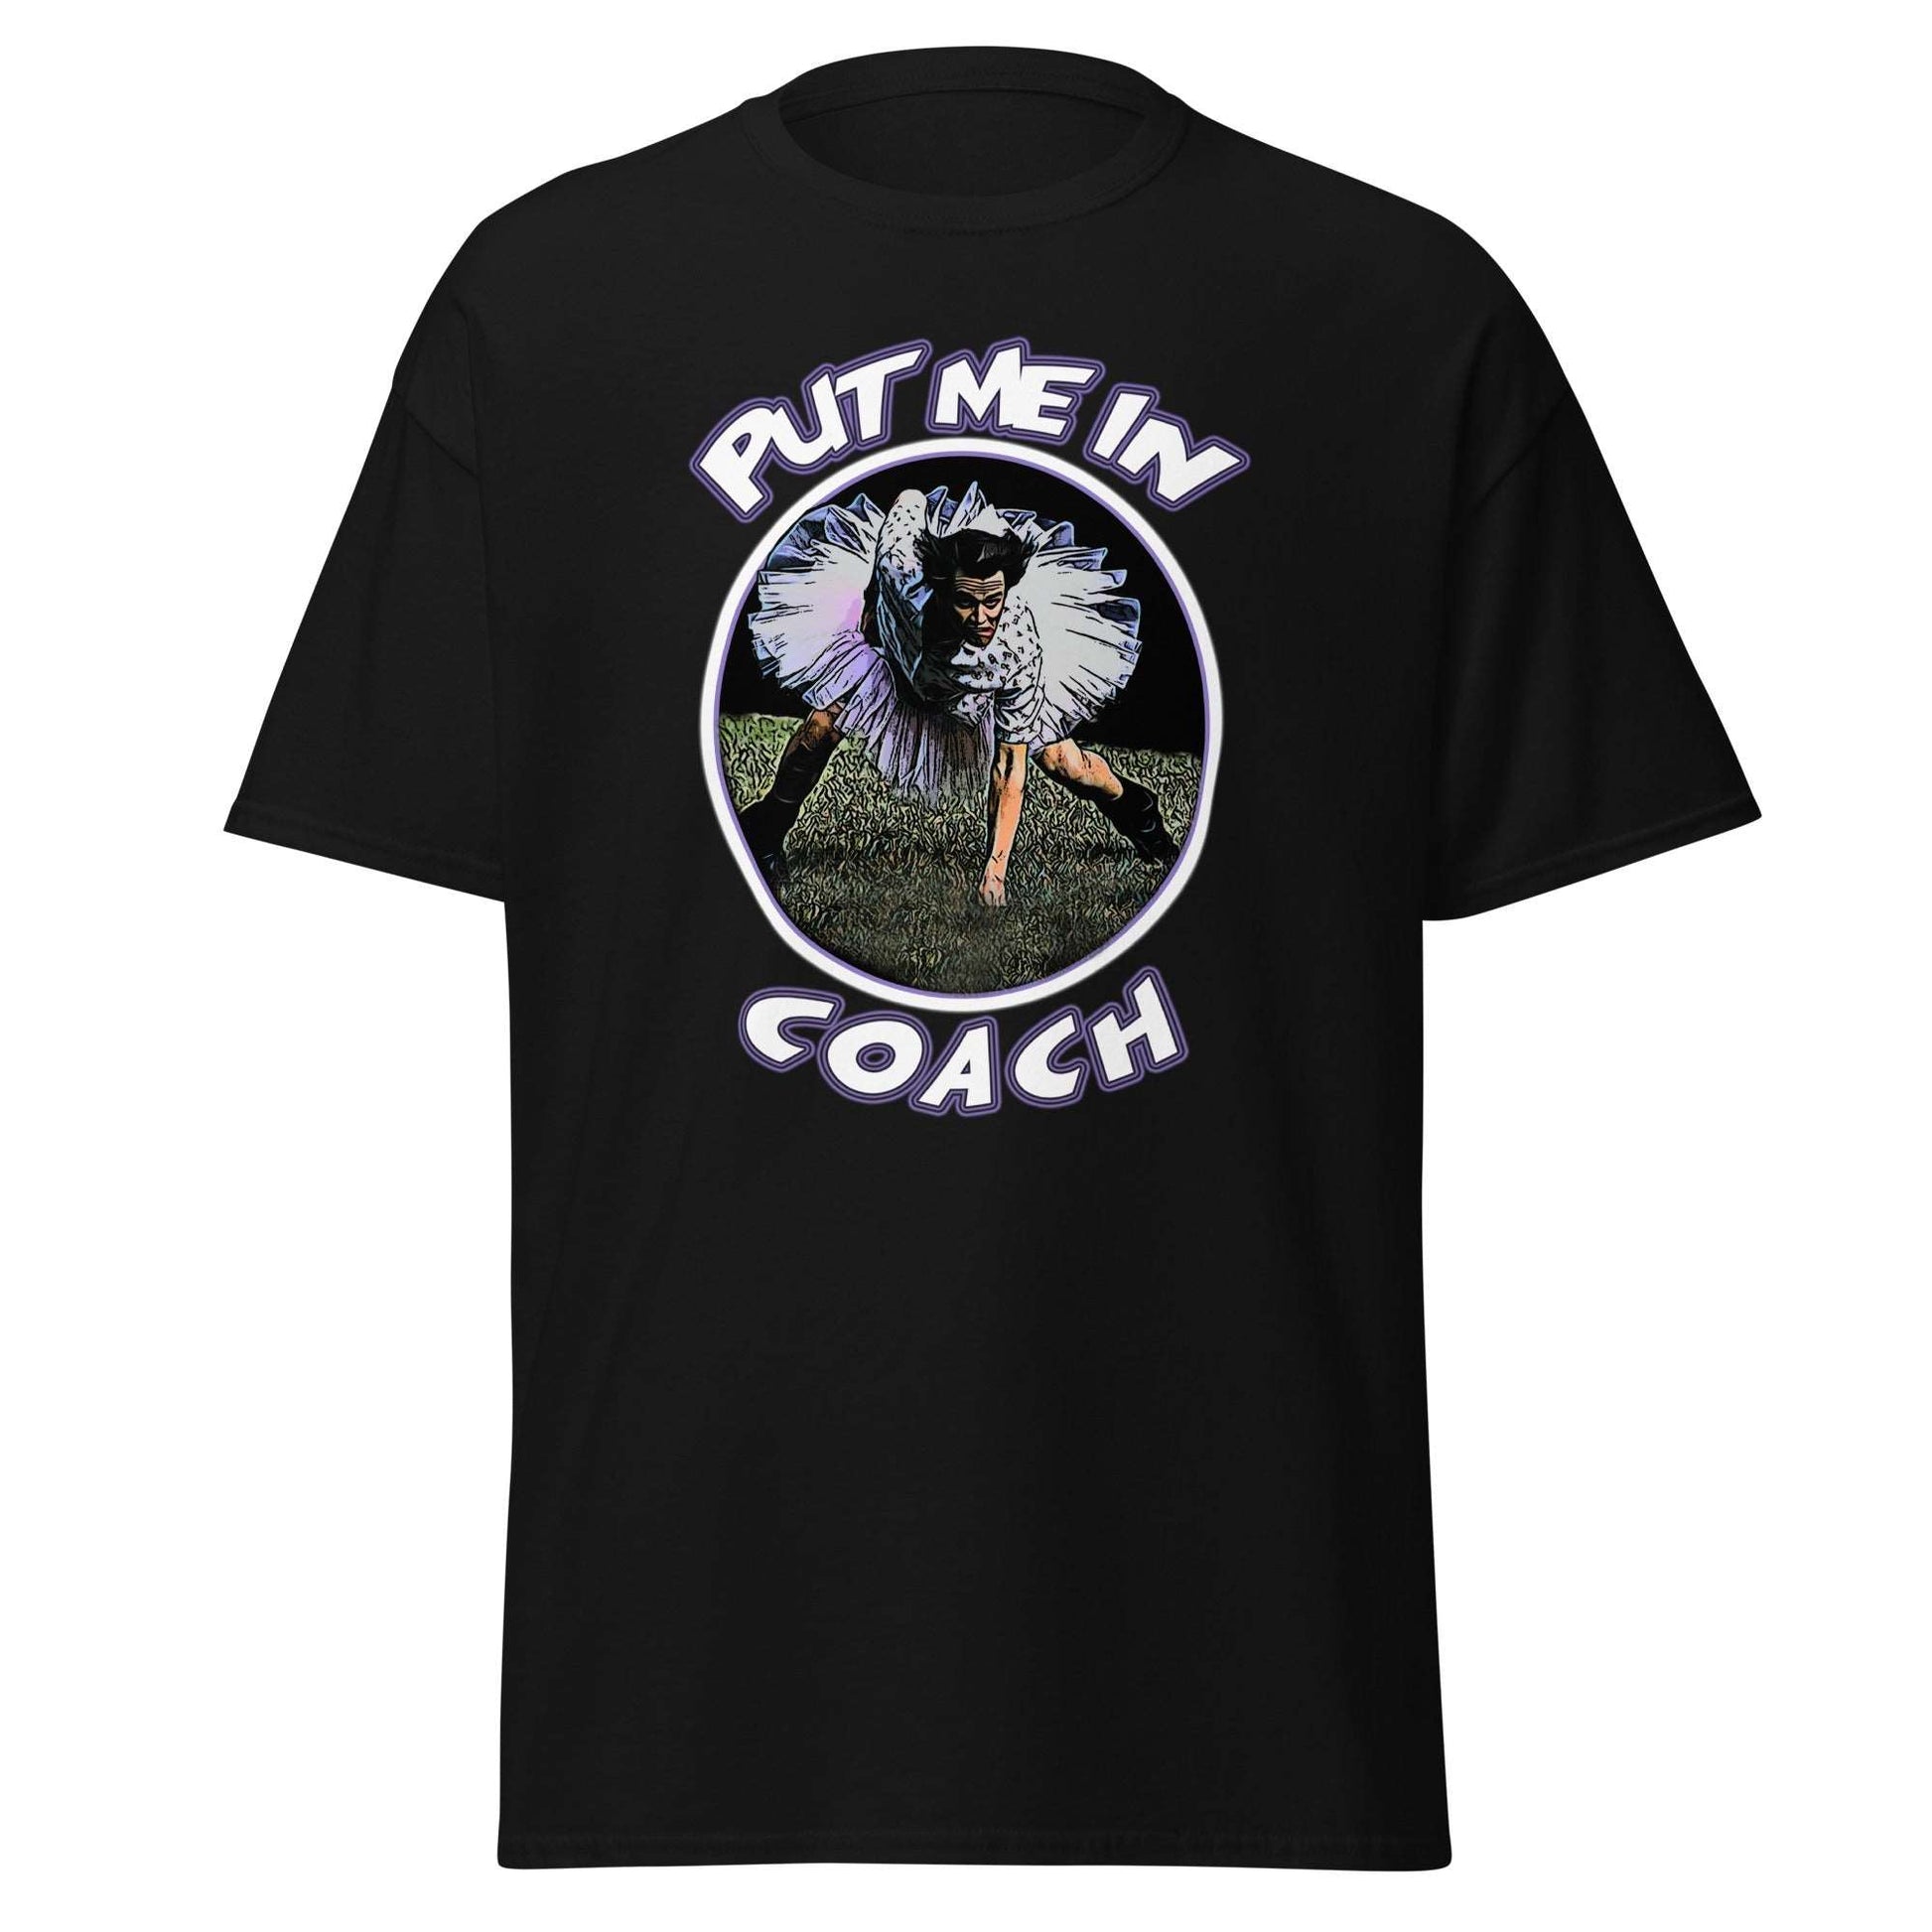 Ace Ventura Comedy Movie T-Shirt  - Black